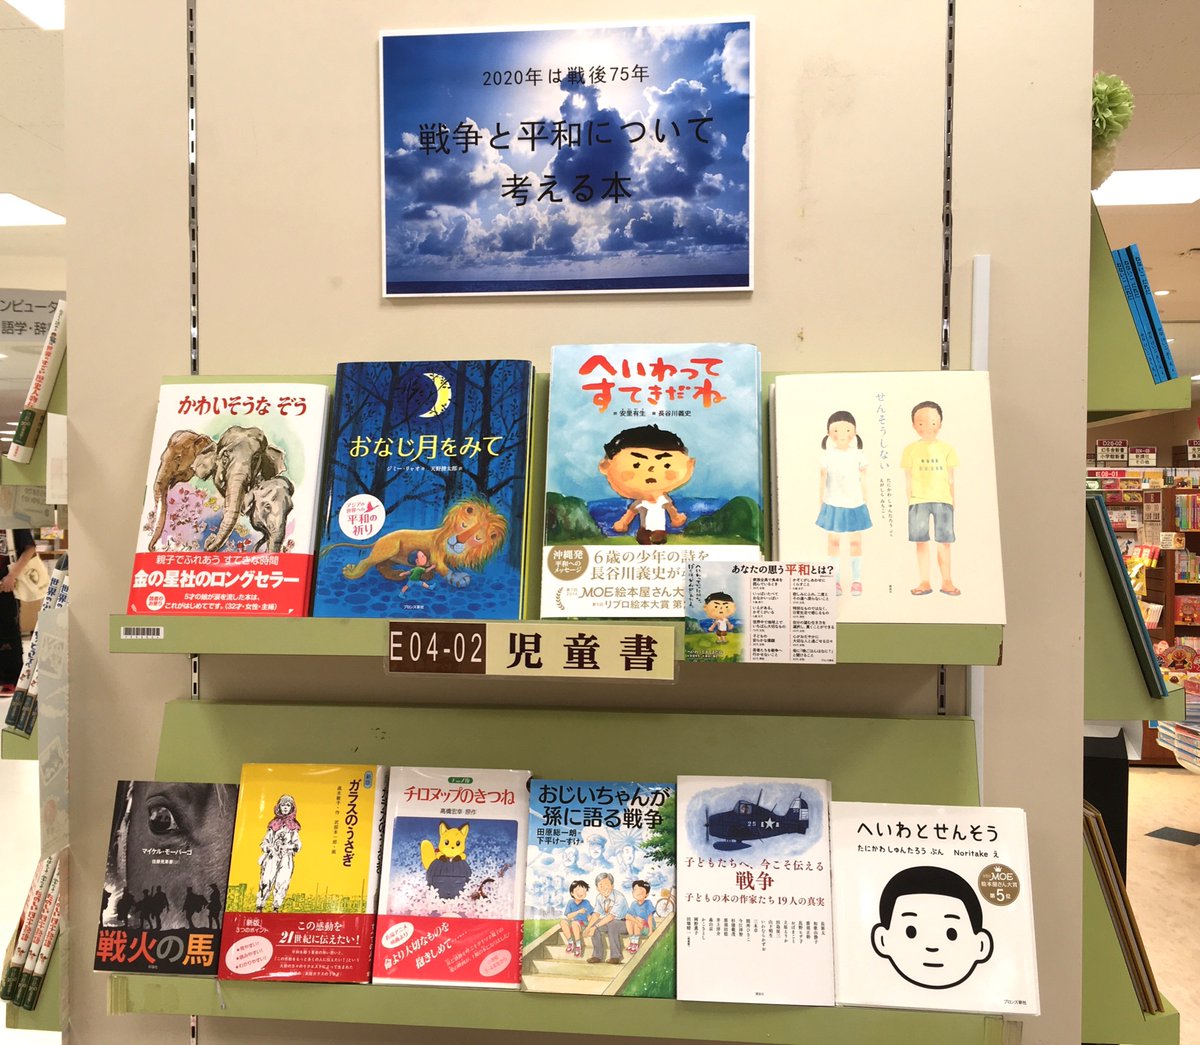 三省堂書店札幌店 على تويتر 子供たちに語り継ぎたい 戦争や平和について考えるきっかけになる児童書を集めてミニフェアにしています ぜひご覧ください